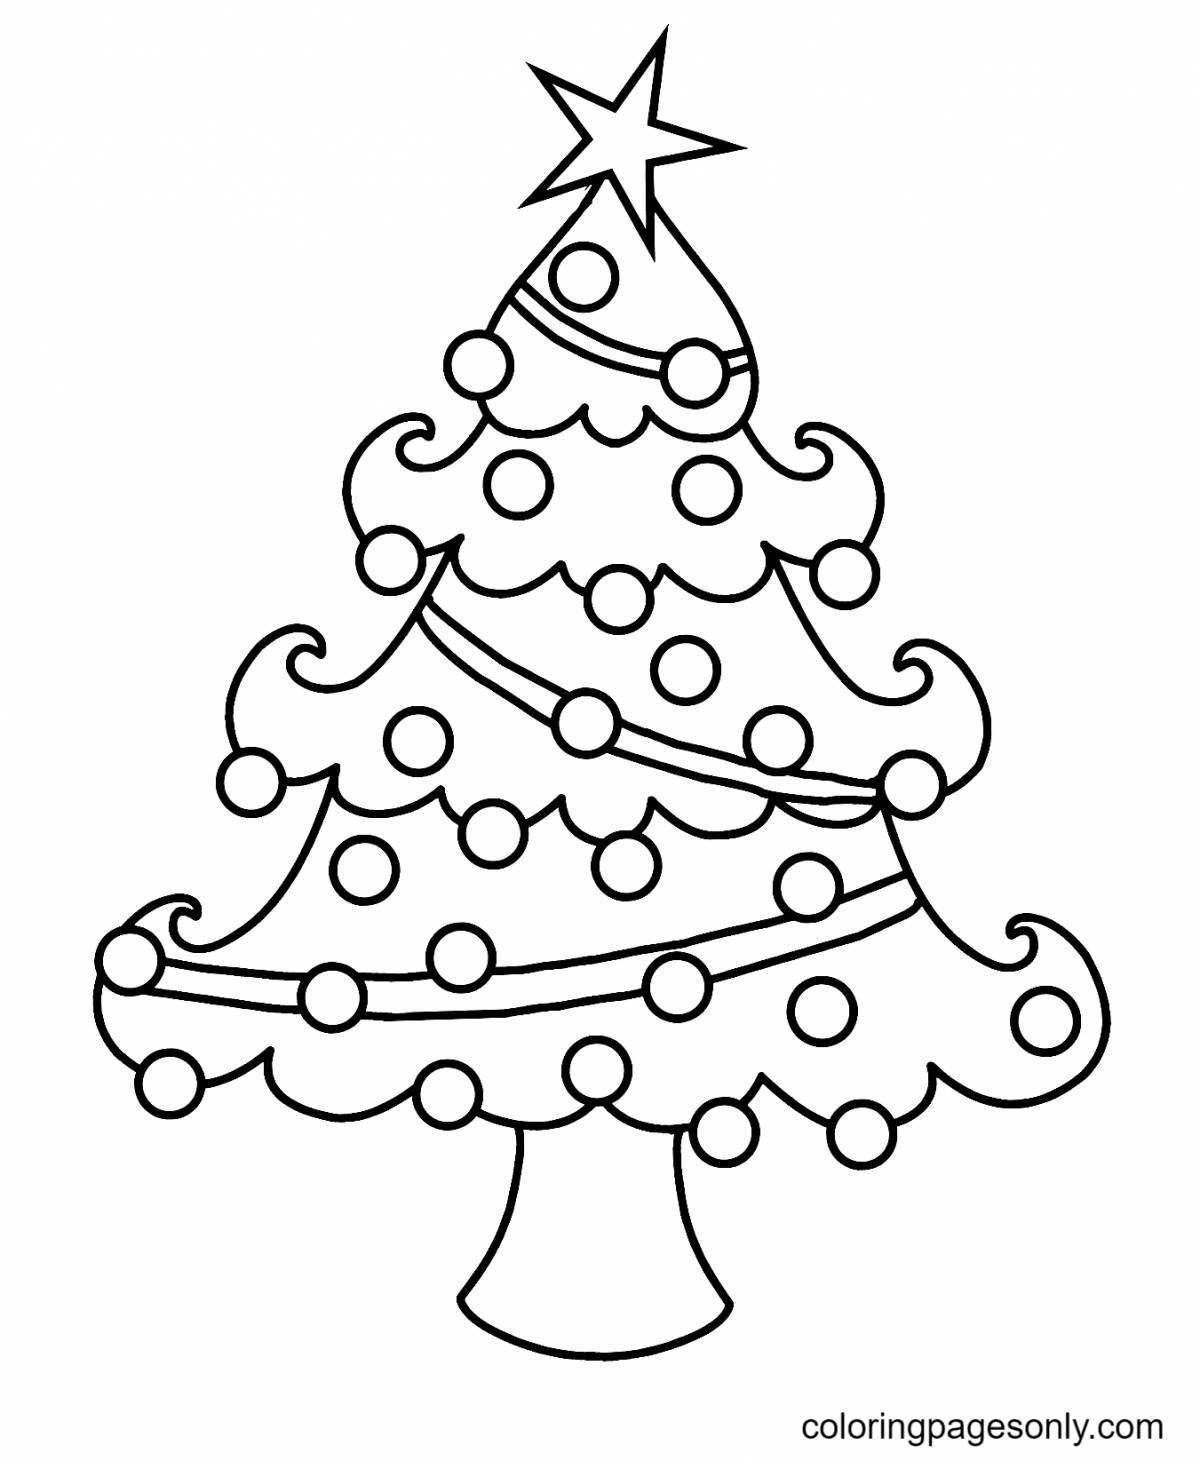 Charming Christmas tree with balls